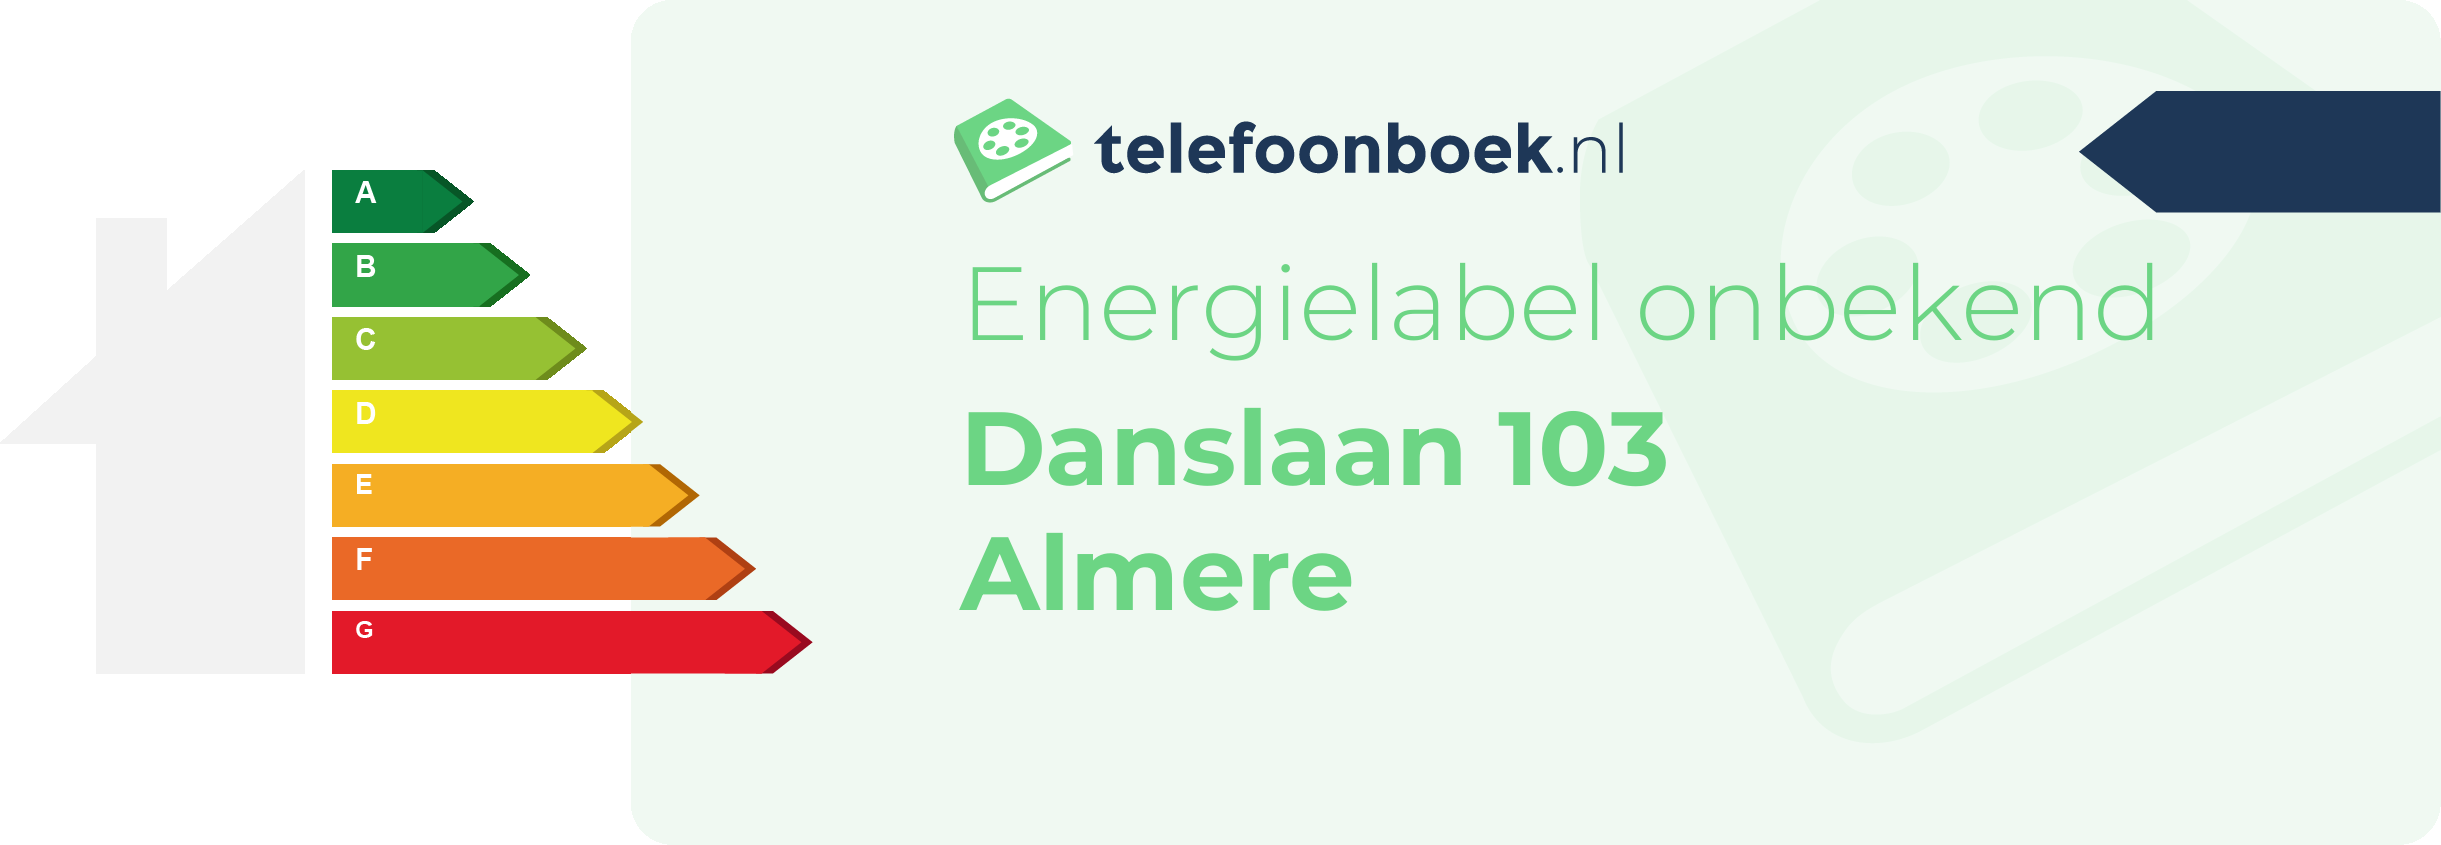 Energielabel Danslaan 103 Almere